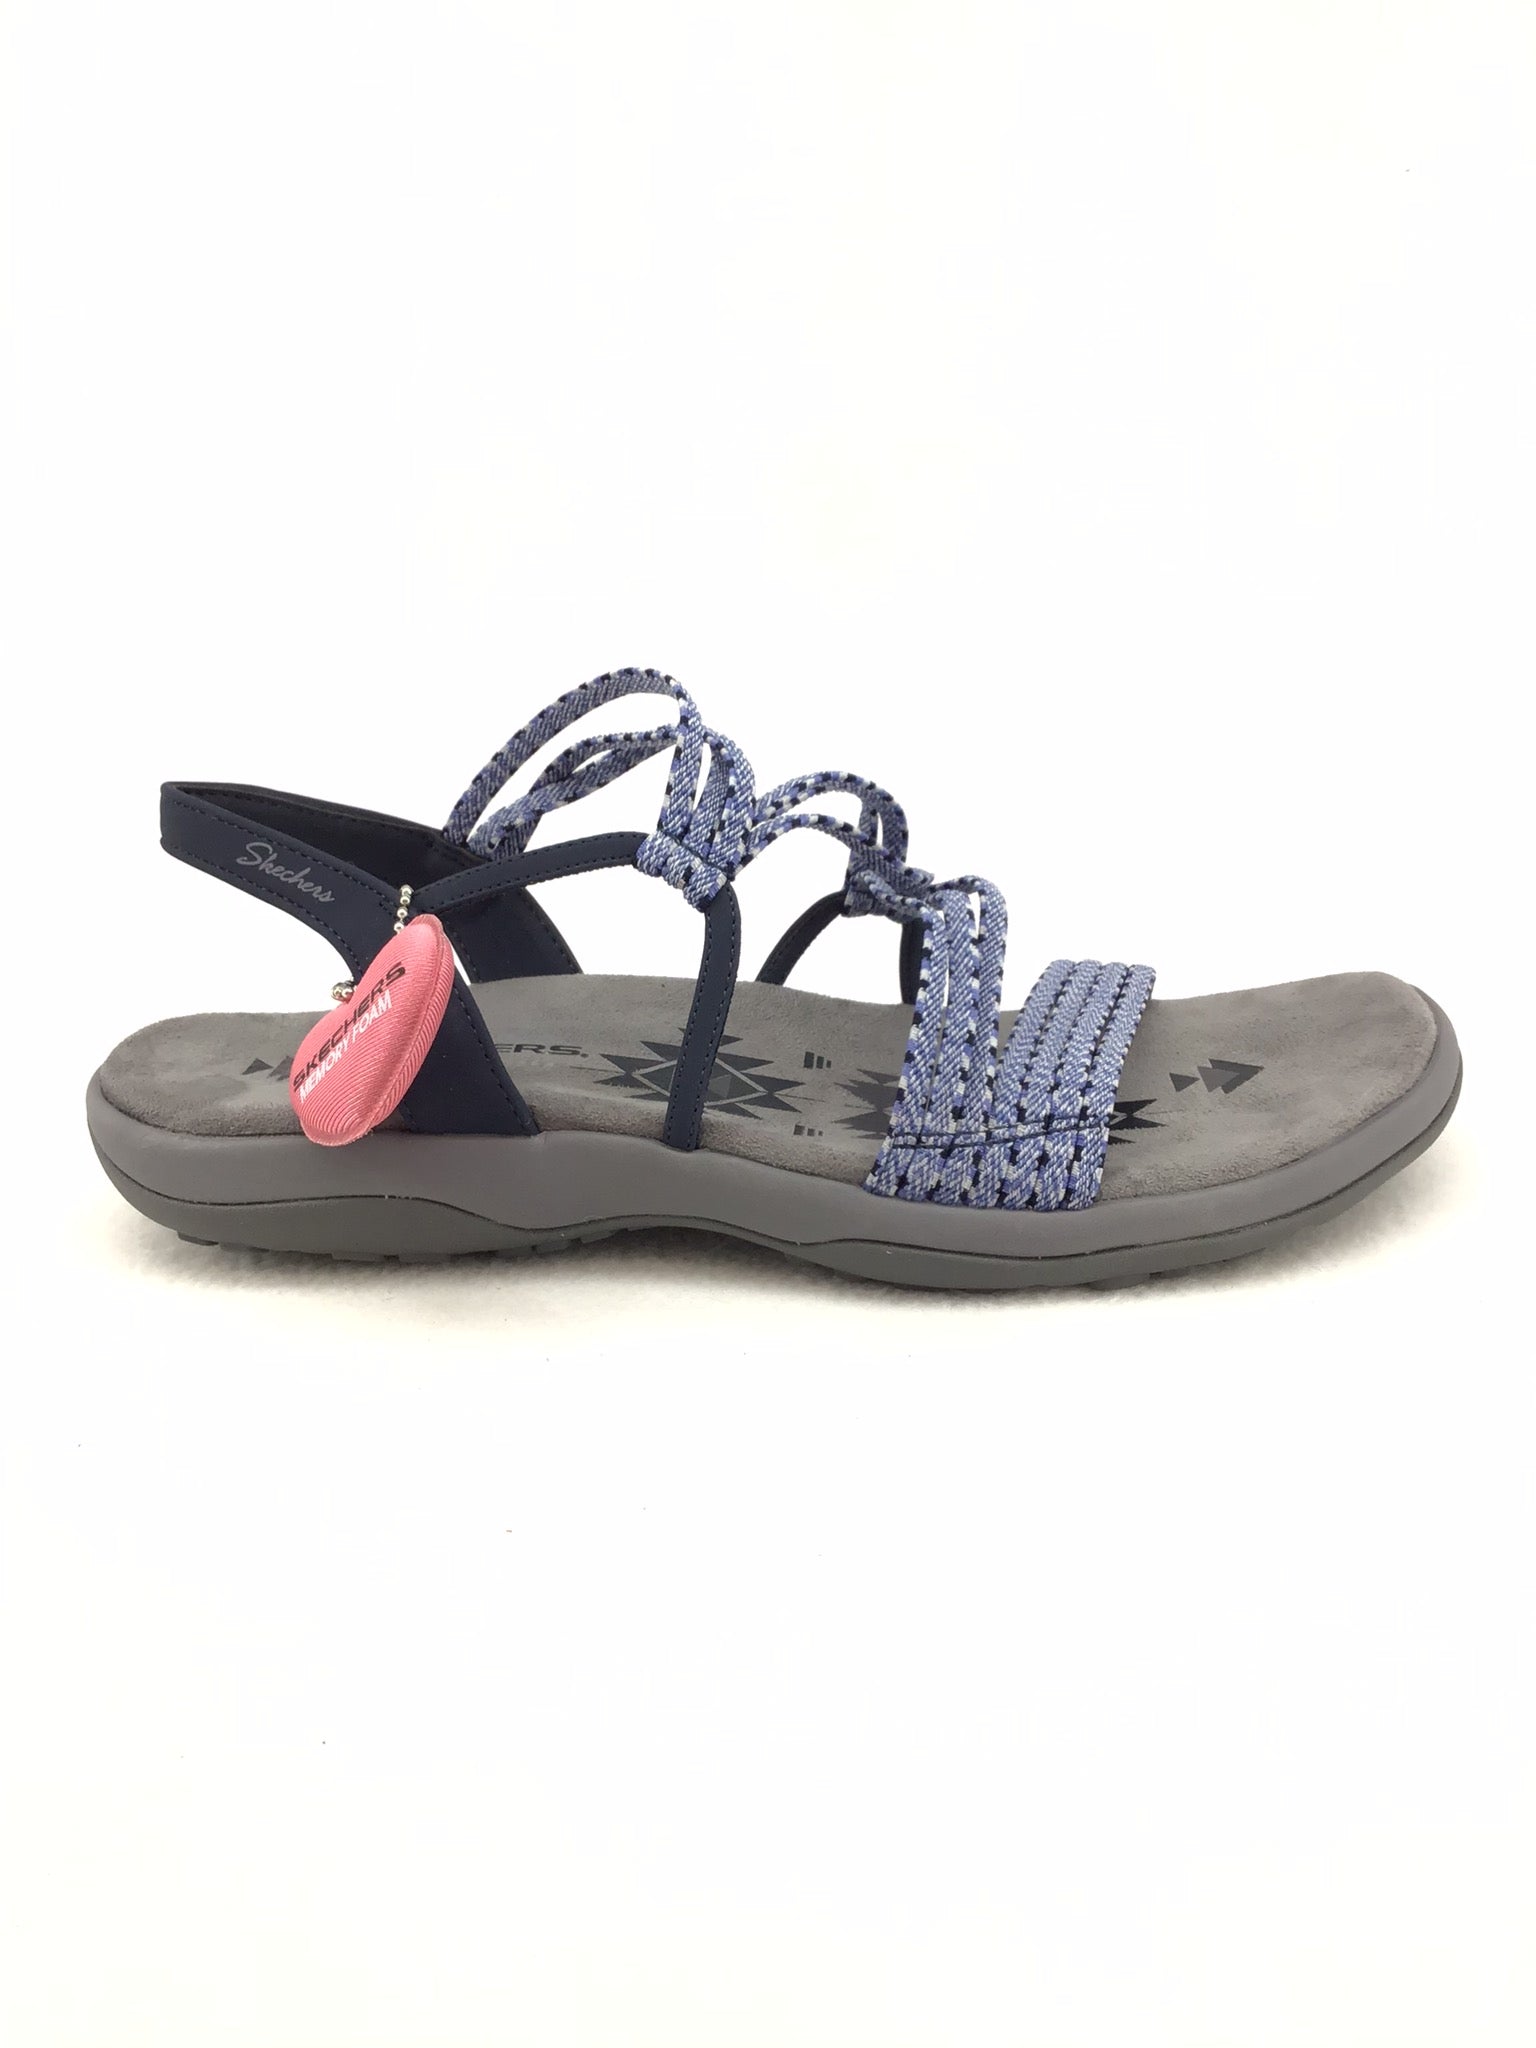 Skechers Foam Sandals Size 11 – Marti & Liz Boutique